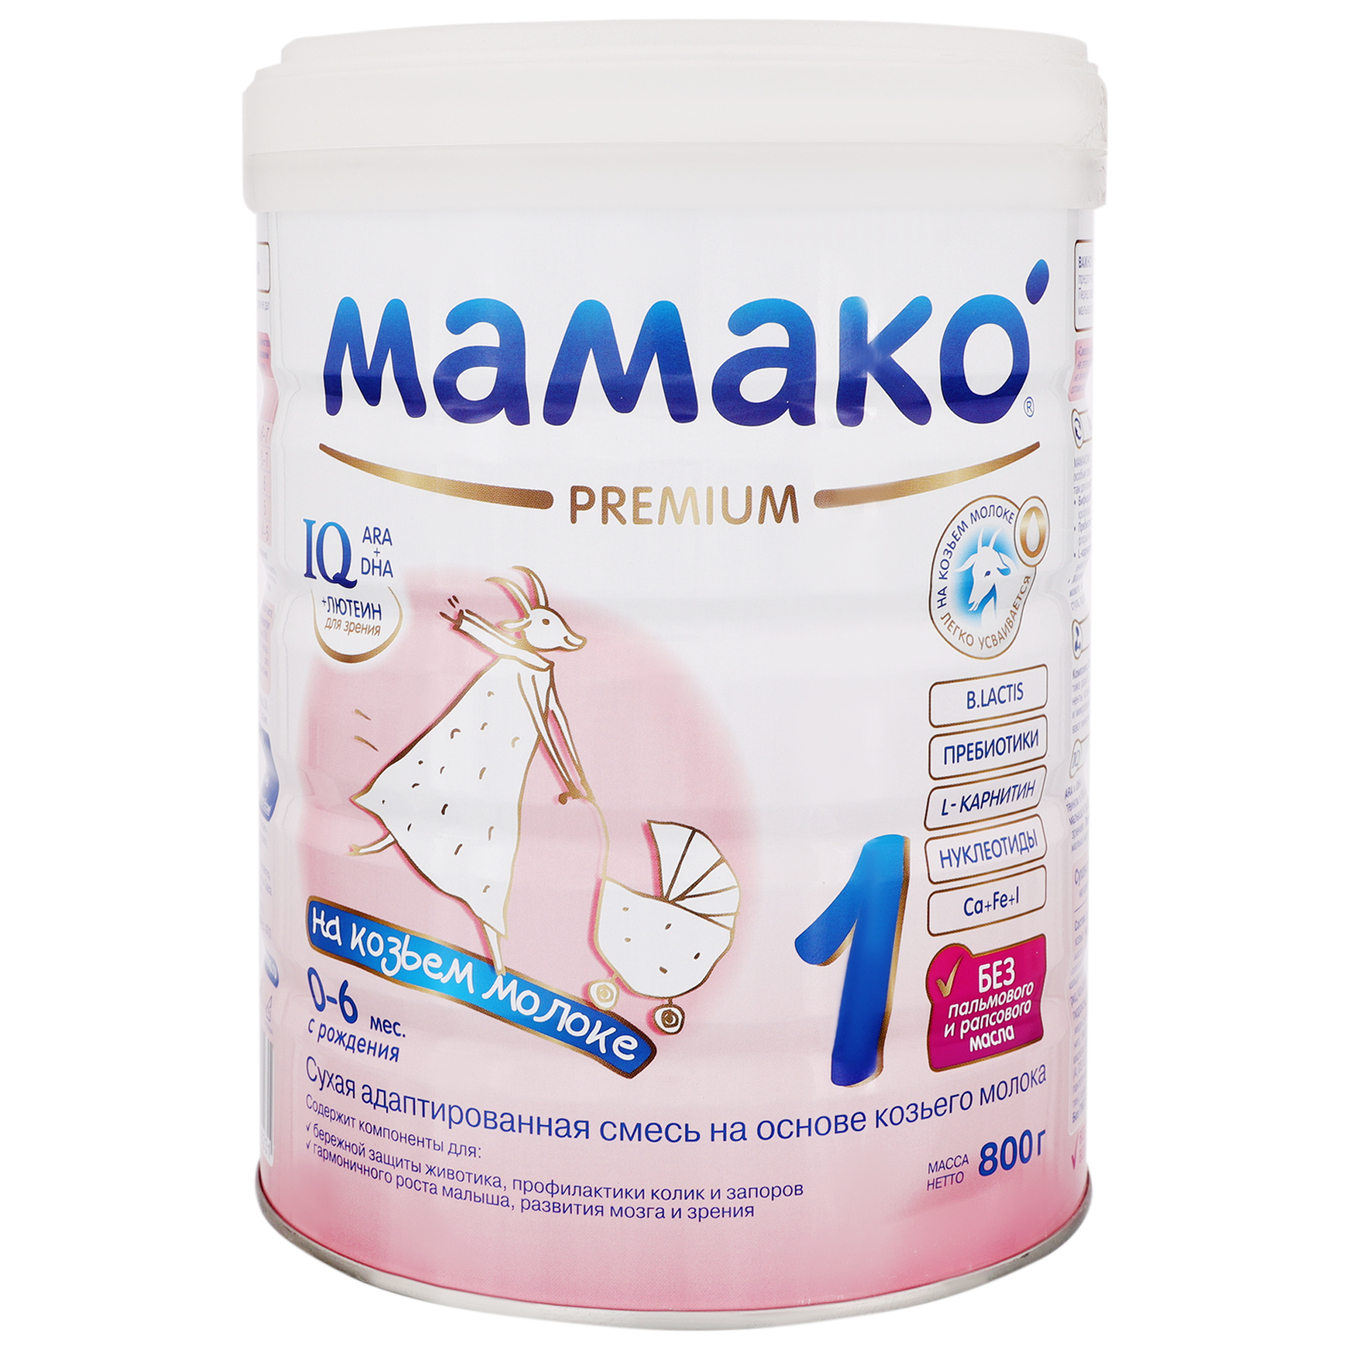 Mamako 1 Premium dry milk mixture for children aged 0 to 6months 800g 